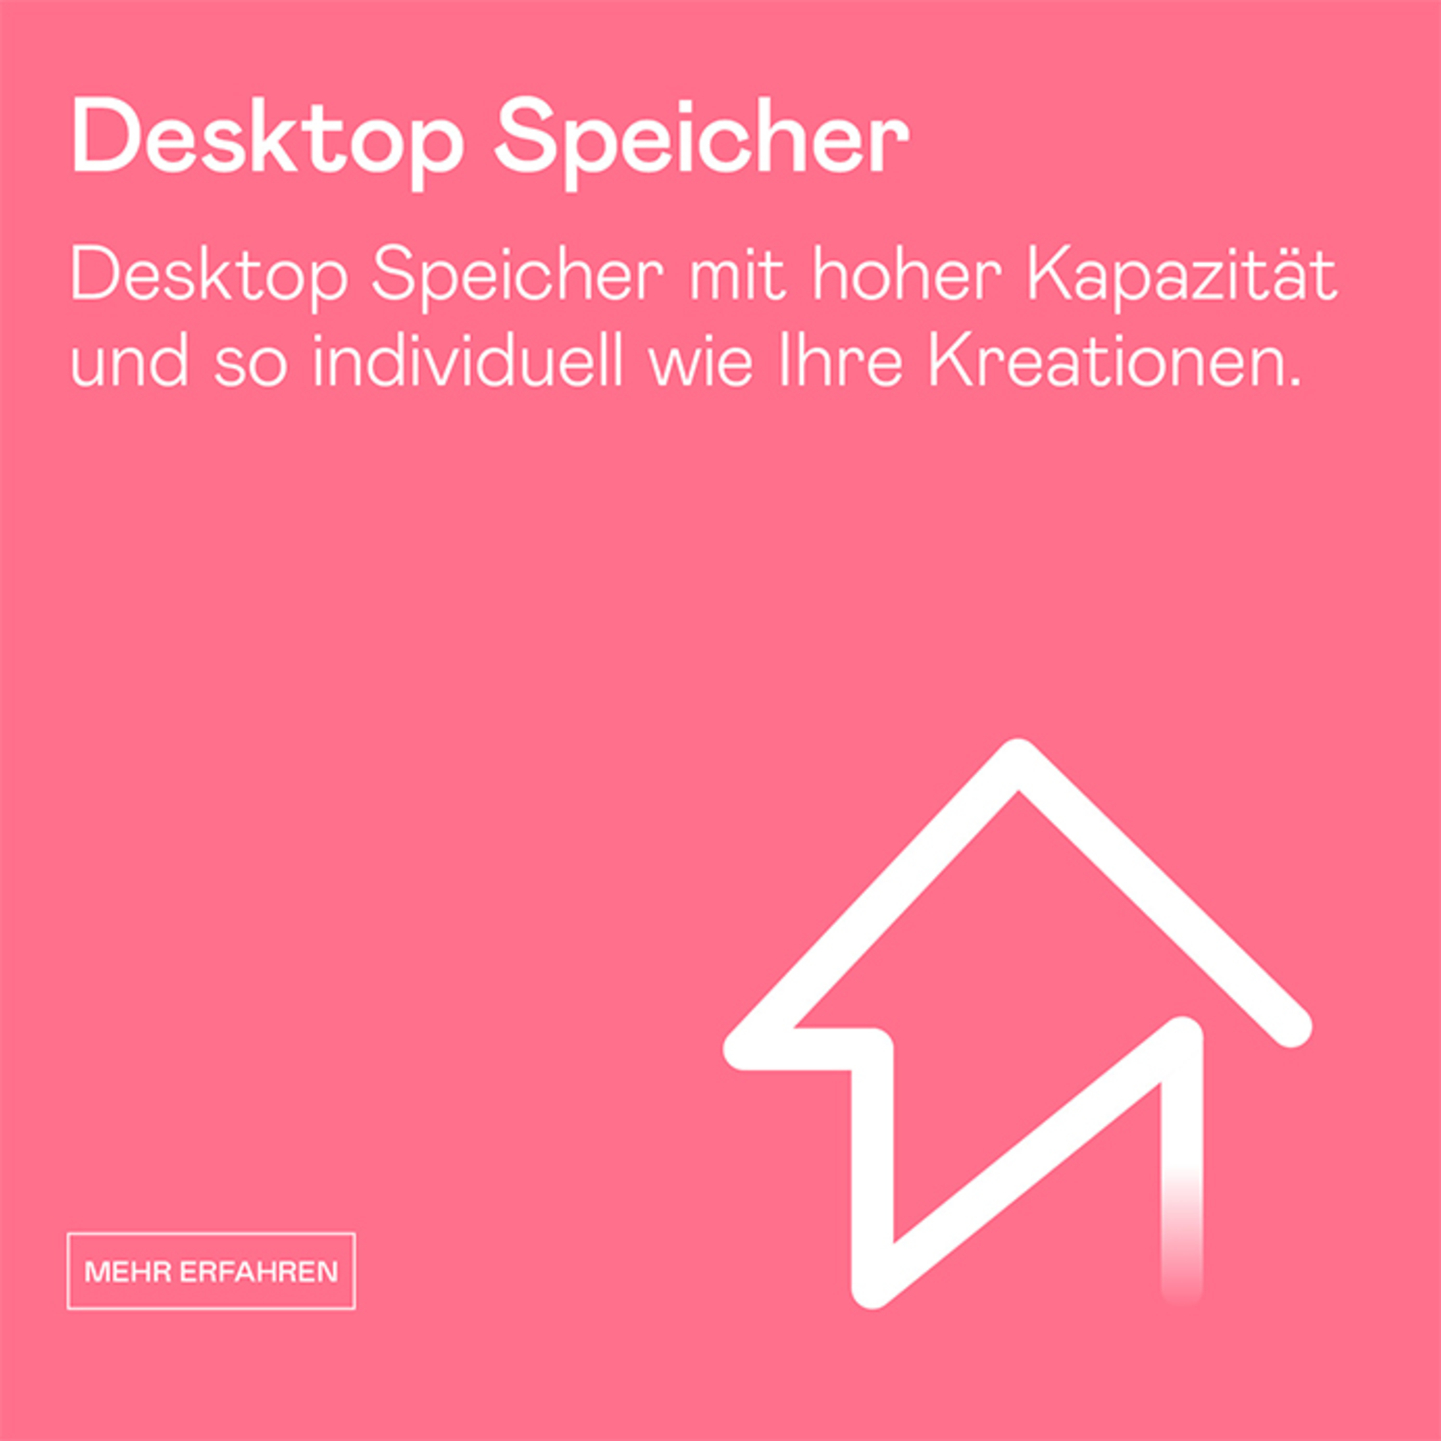 Desktop Speicher